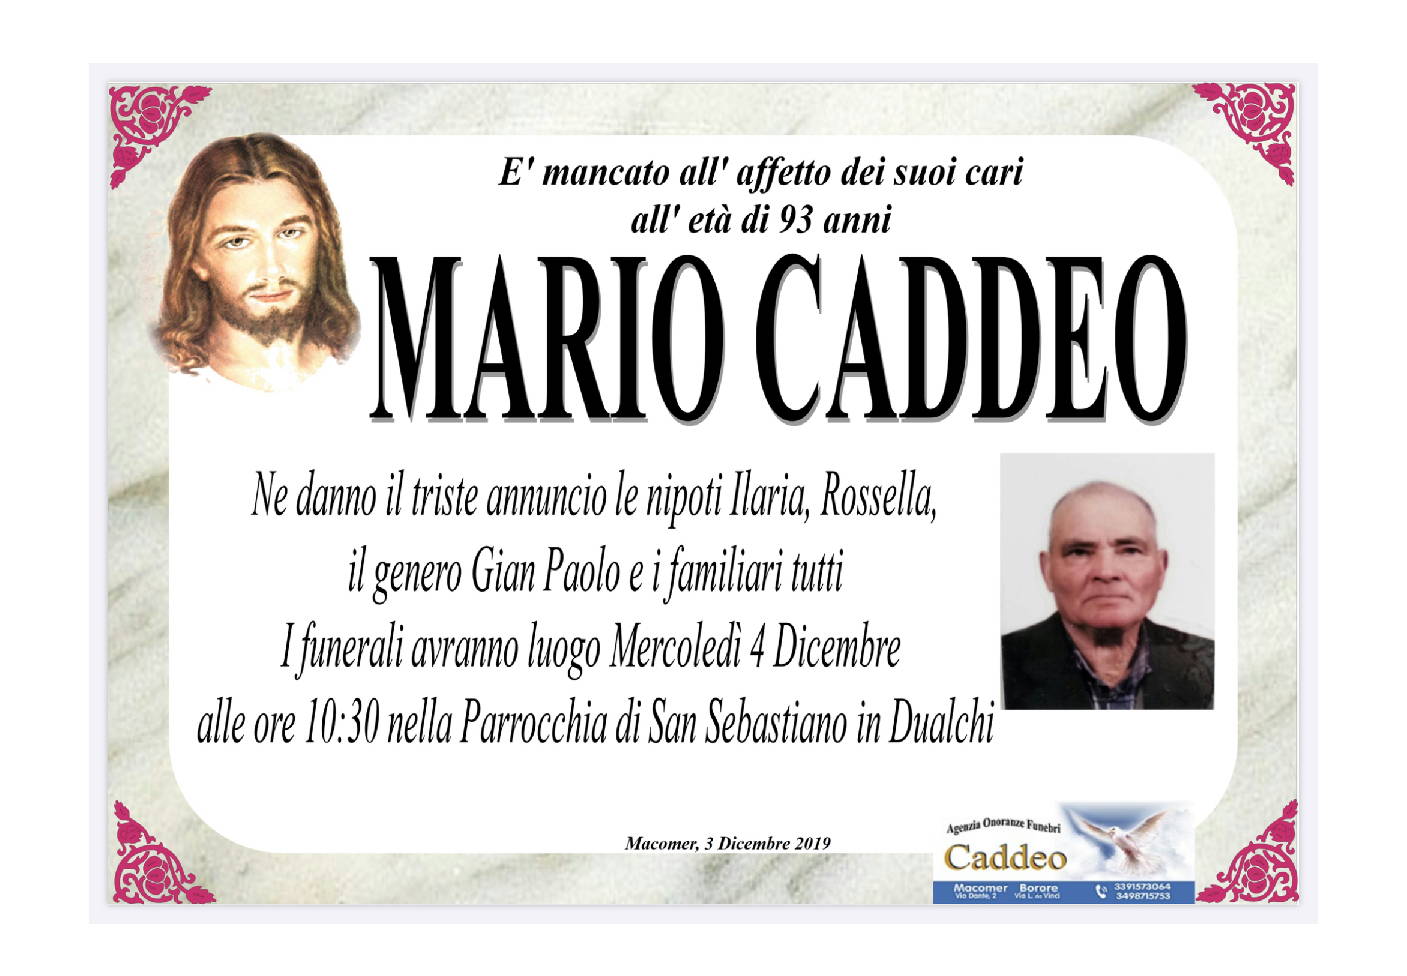 Mario Caddeo